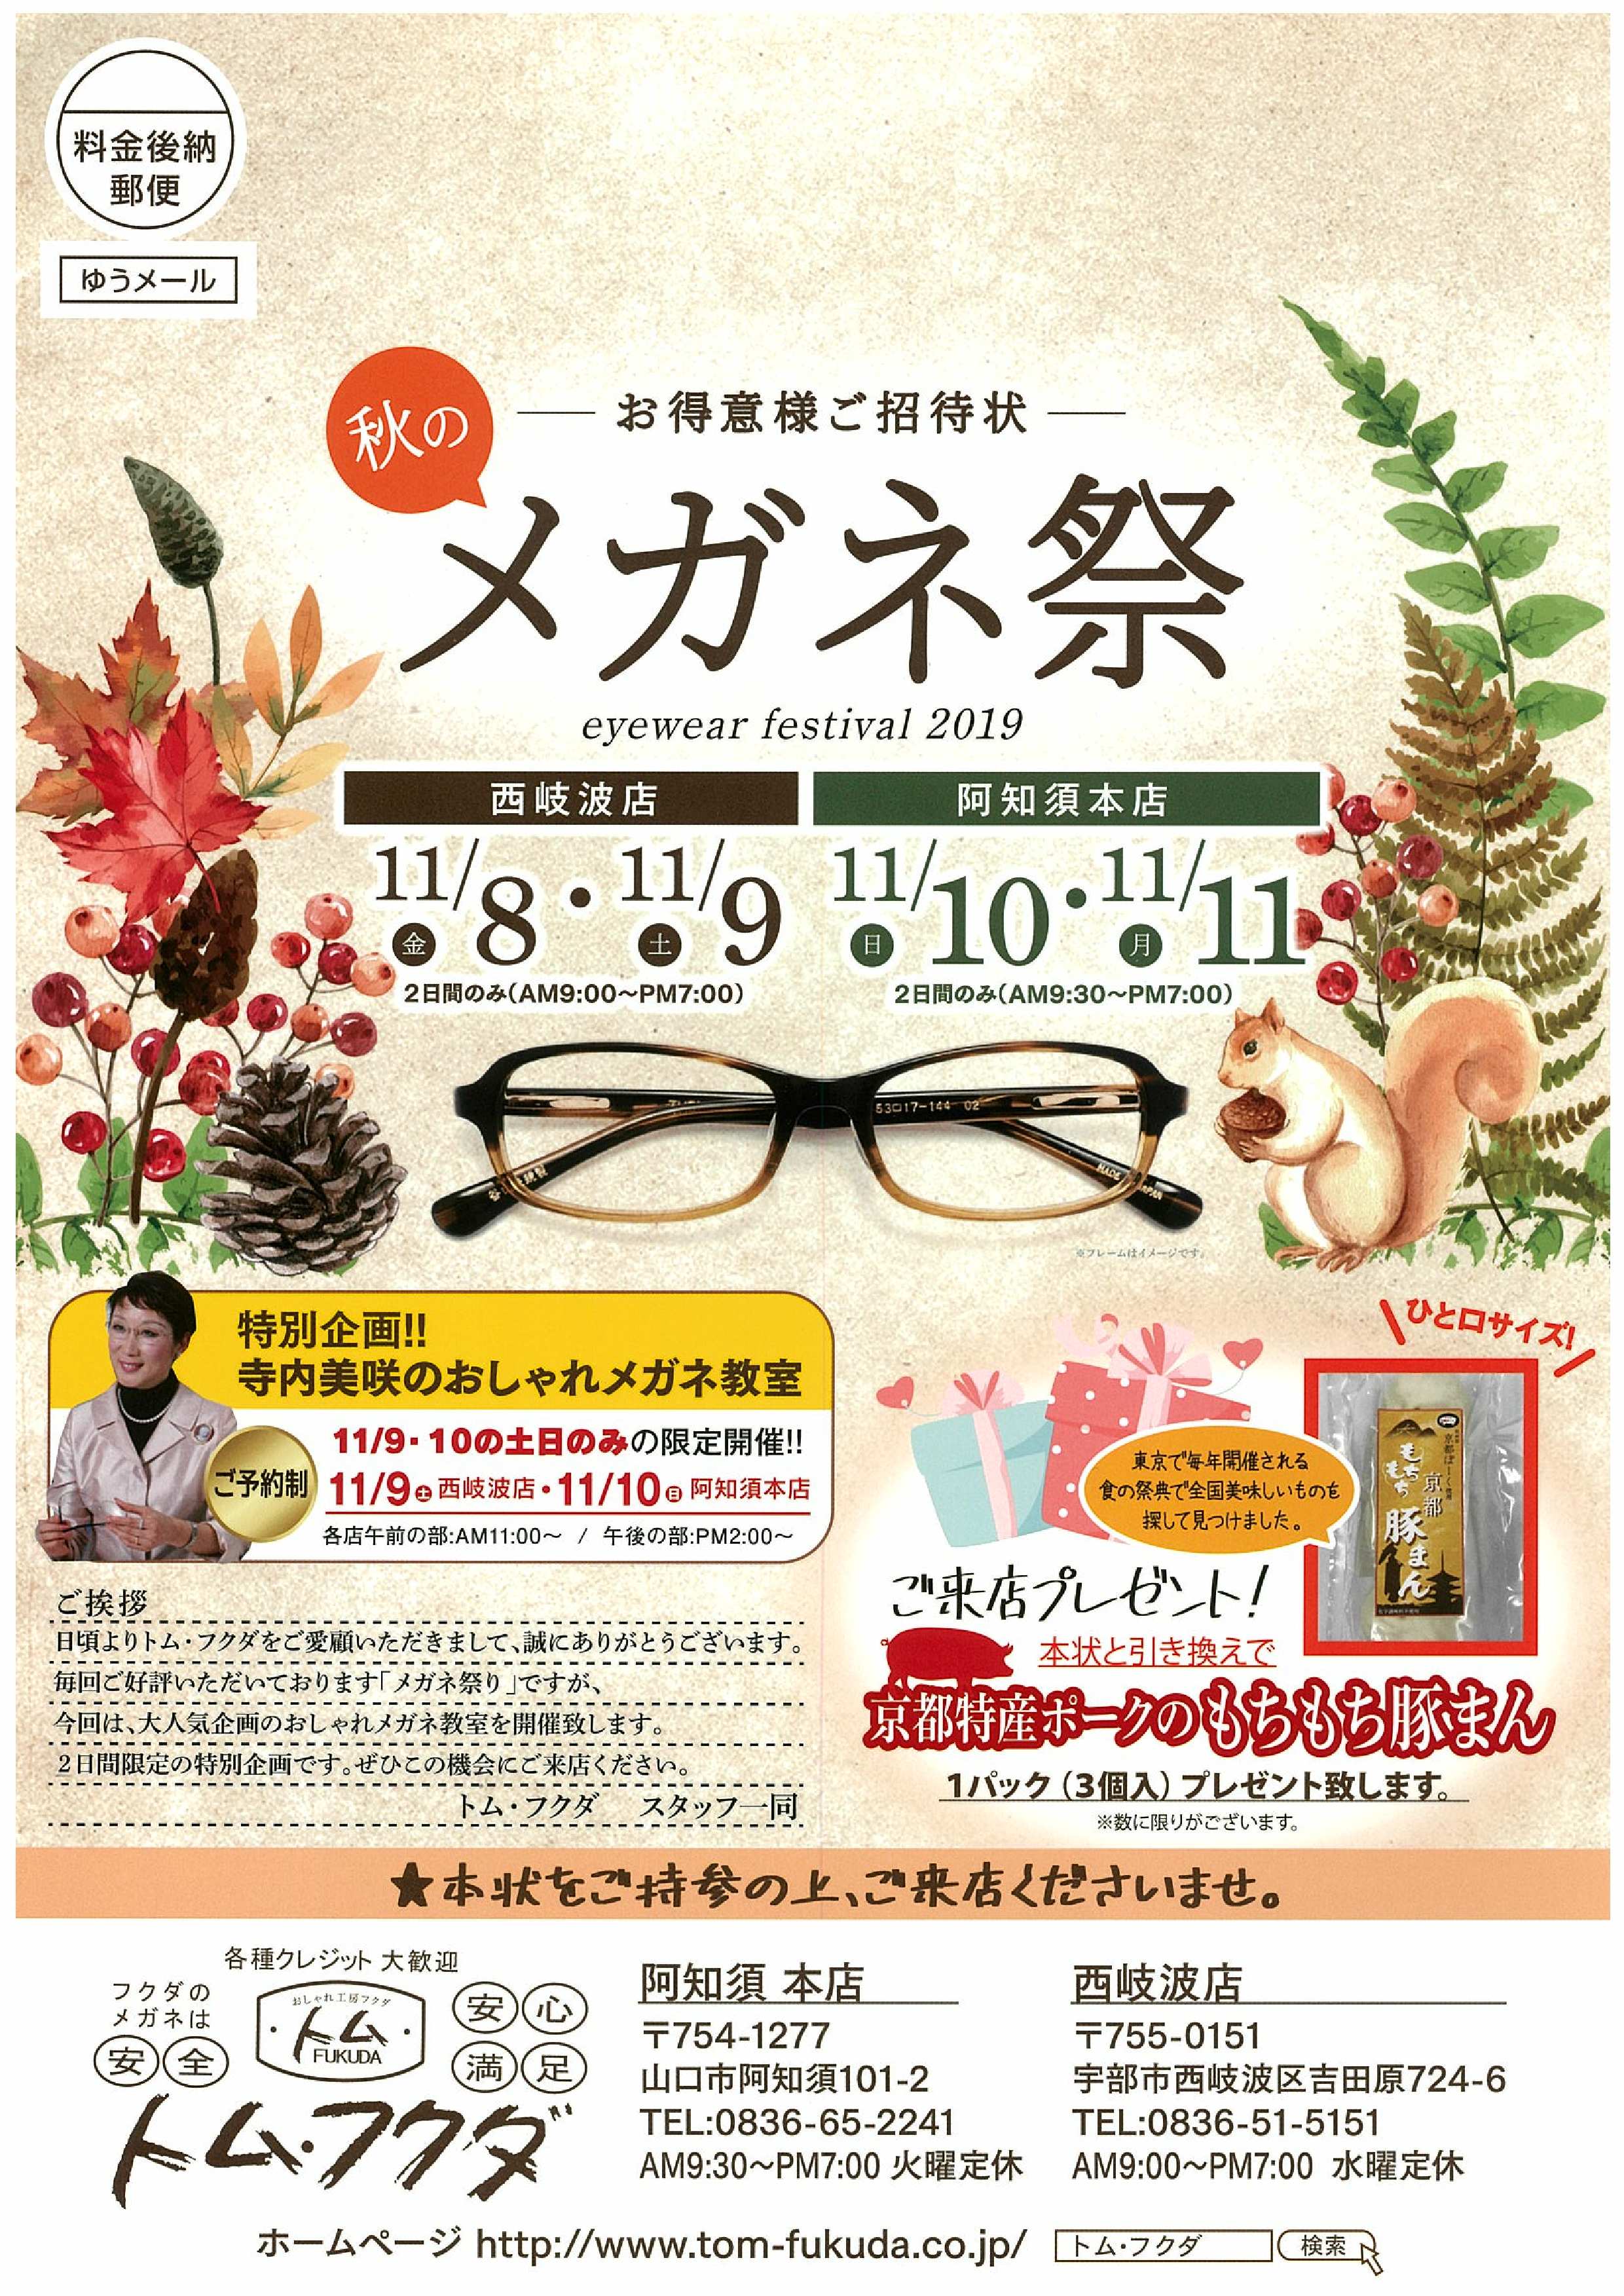 明日からトム･フクダ秋のメガネ祭り